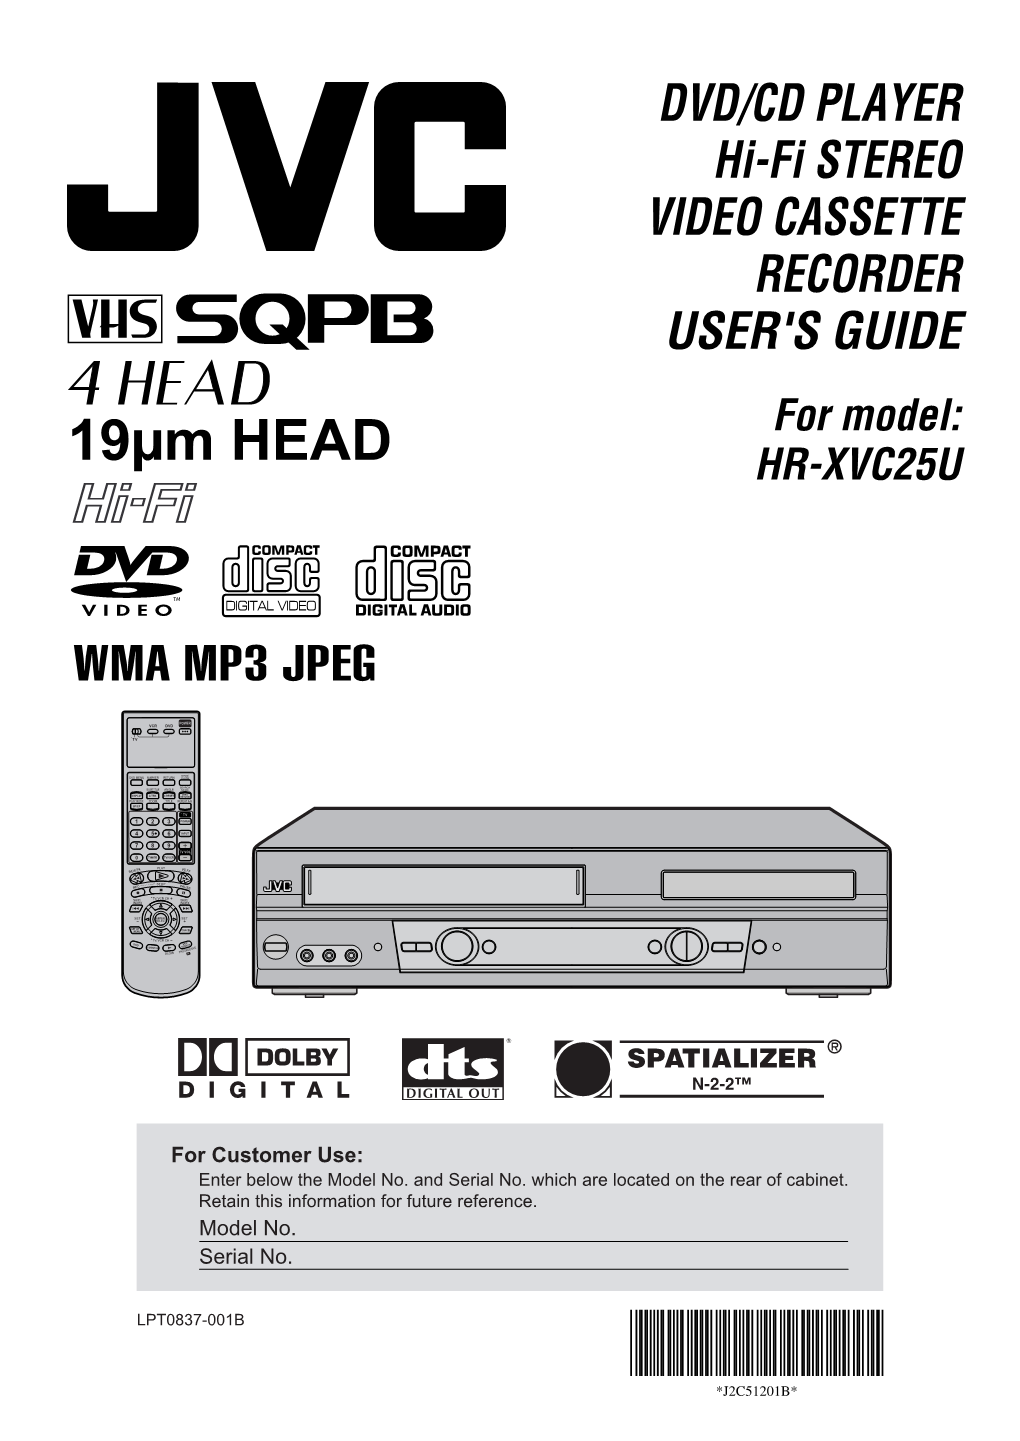 DVD/CD PLAYER Hi-Fi STEREO VIDEO CASSETTE RECORDER USER's GUIDE for Model: HR-XVC25U